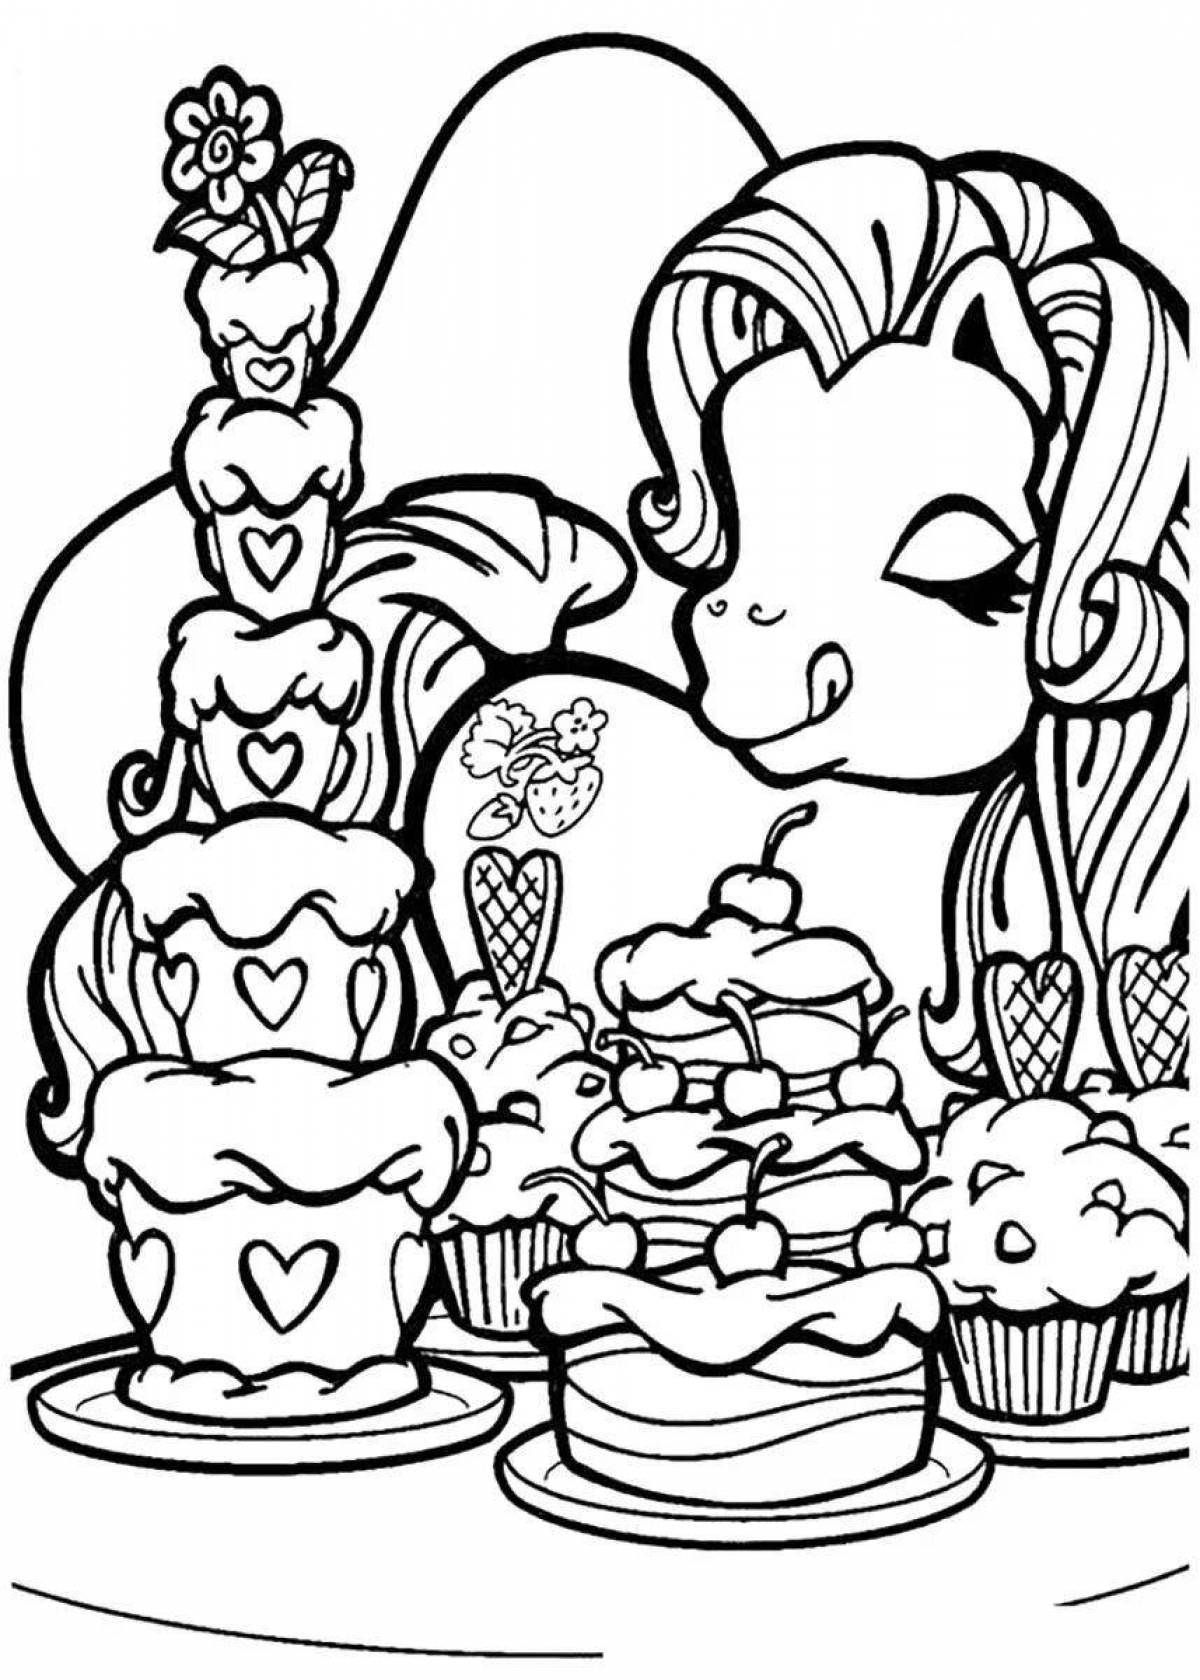 Dreamy coloring unicorn cake